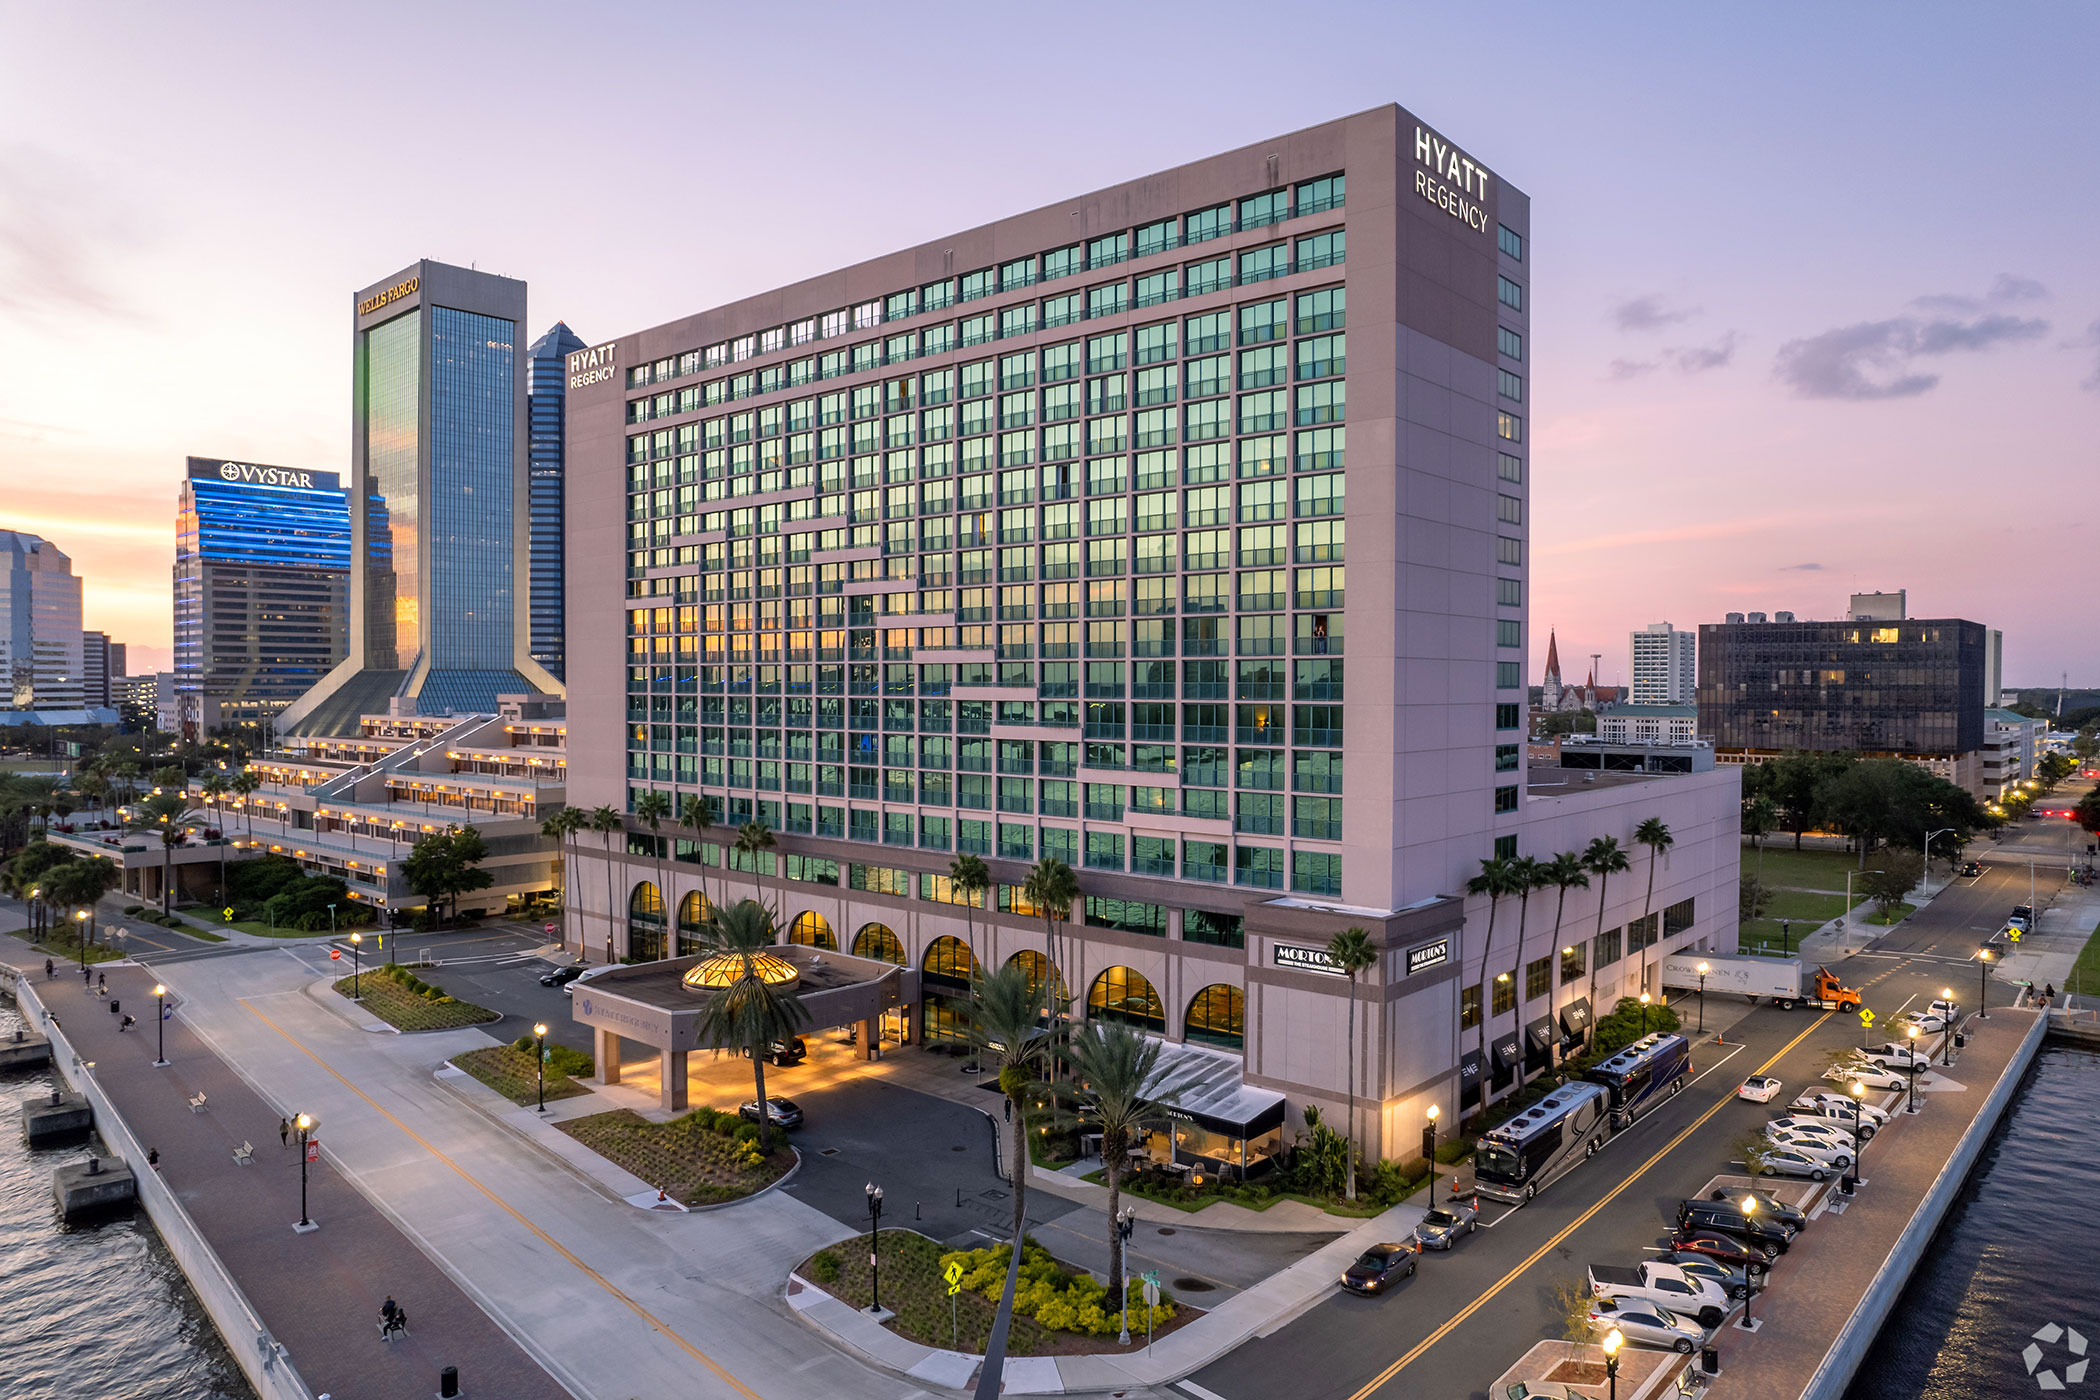 A picture of the Hyatt Regency Hotel in Jacksonville, FL